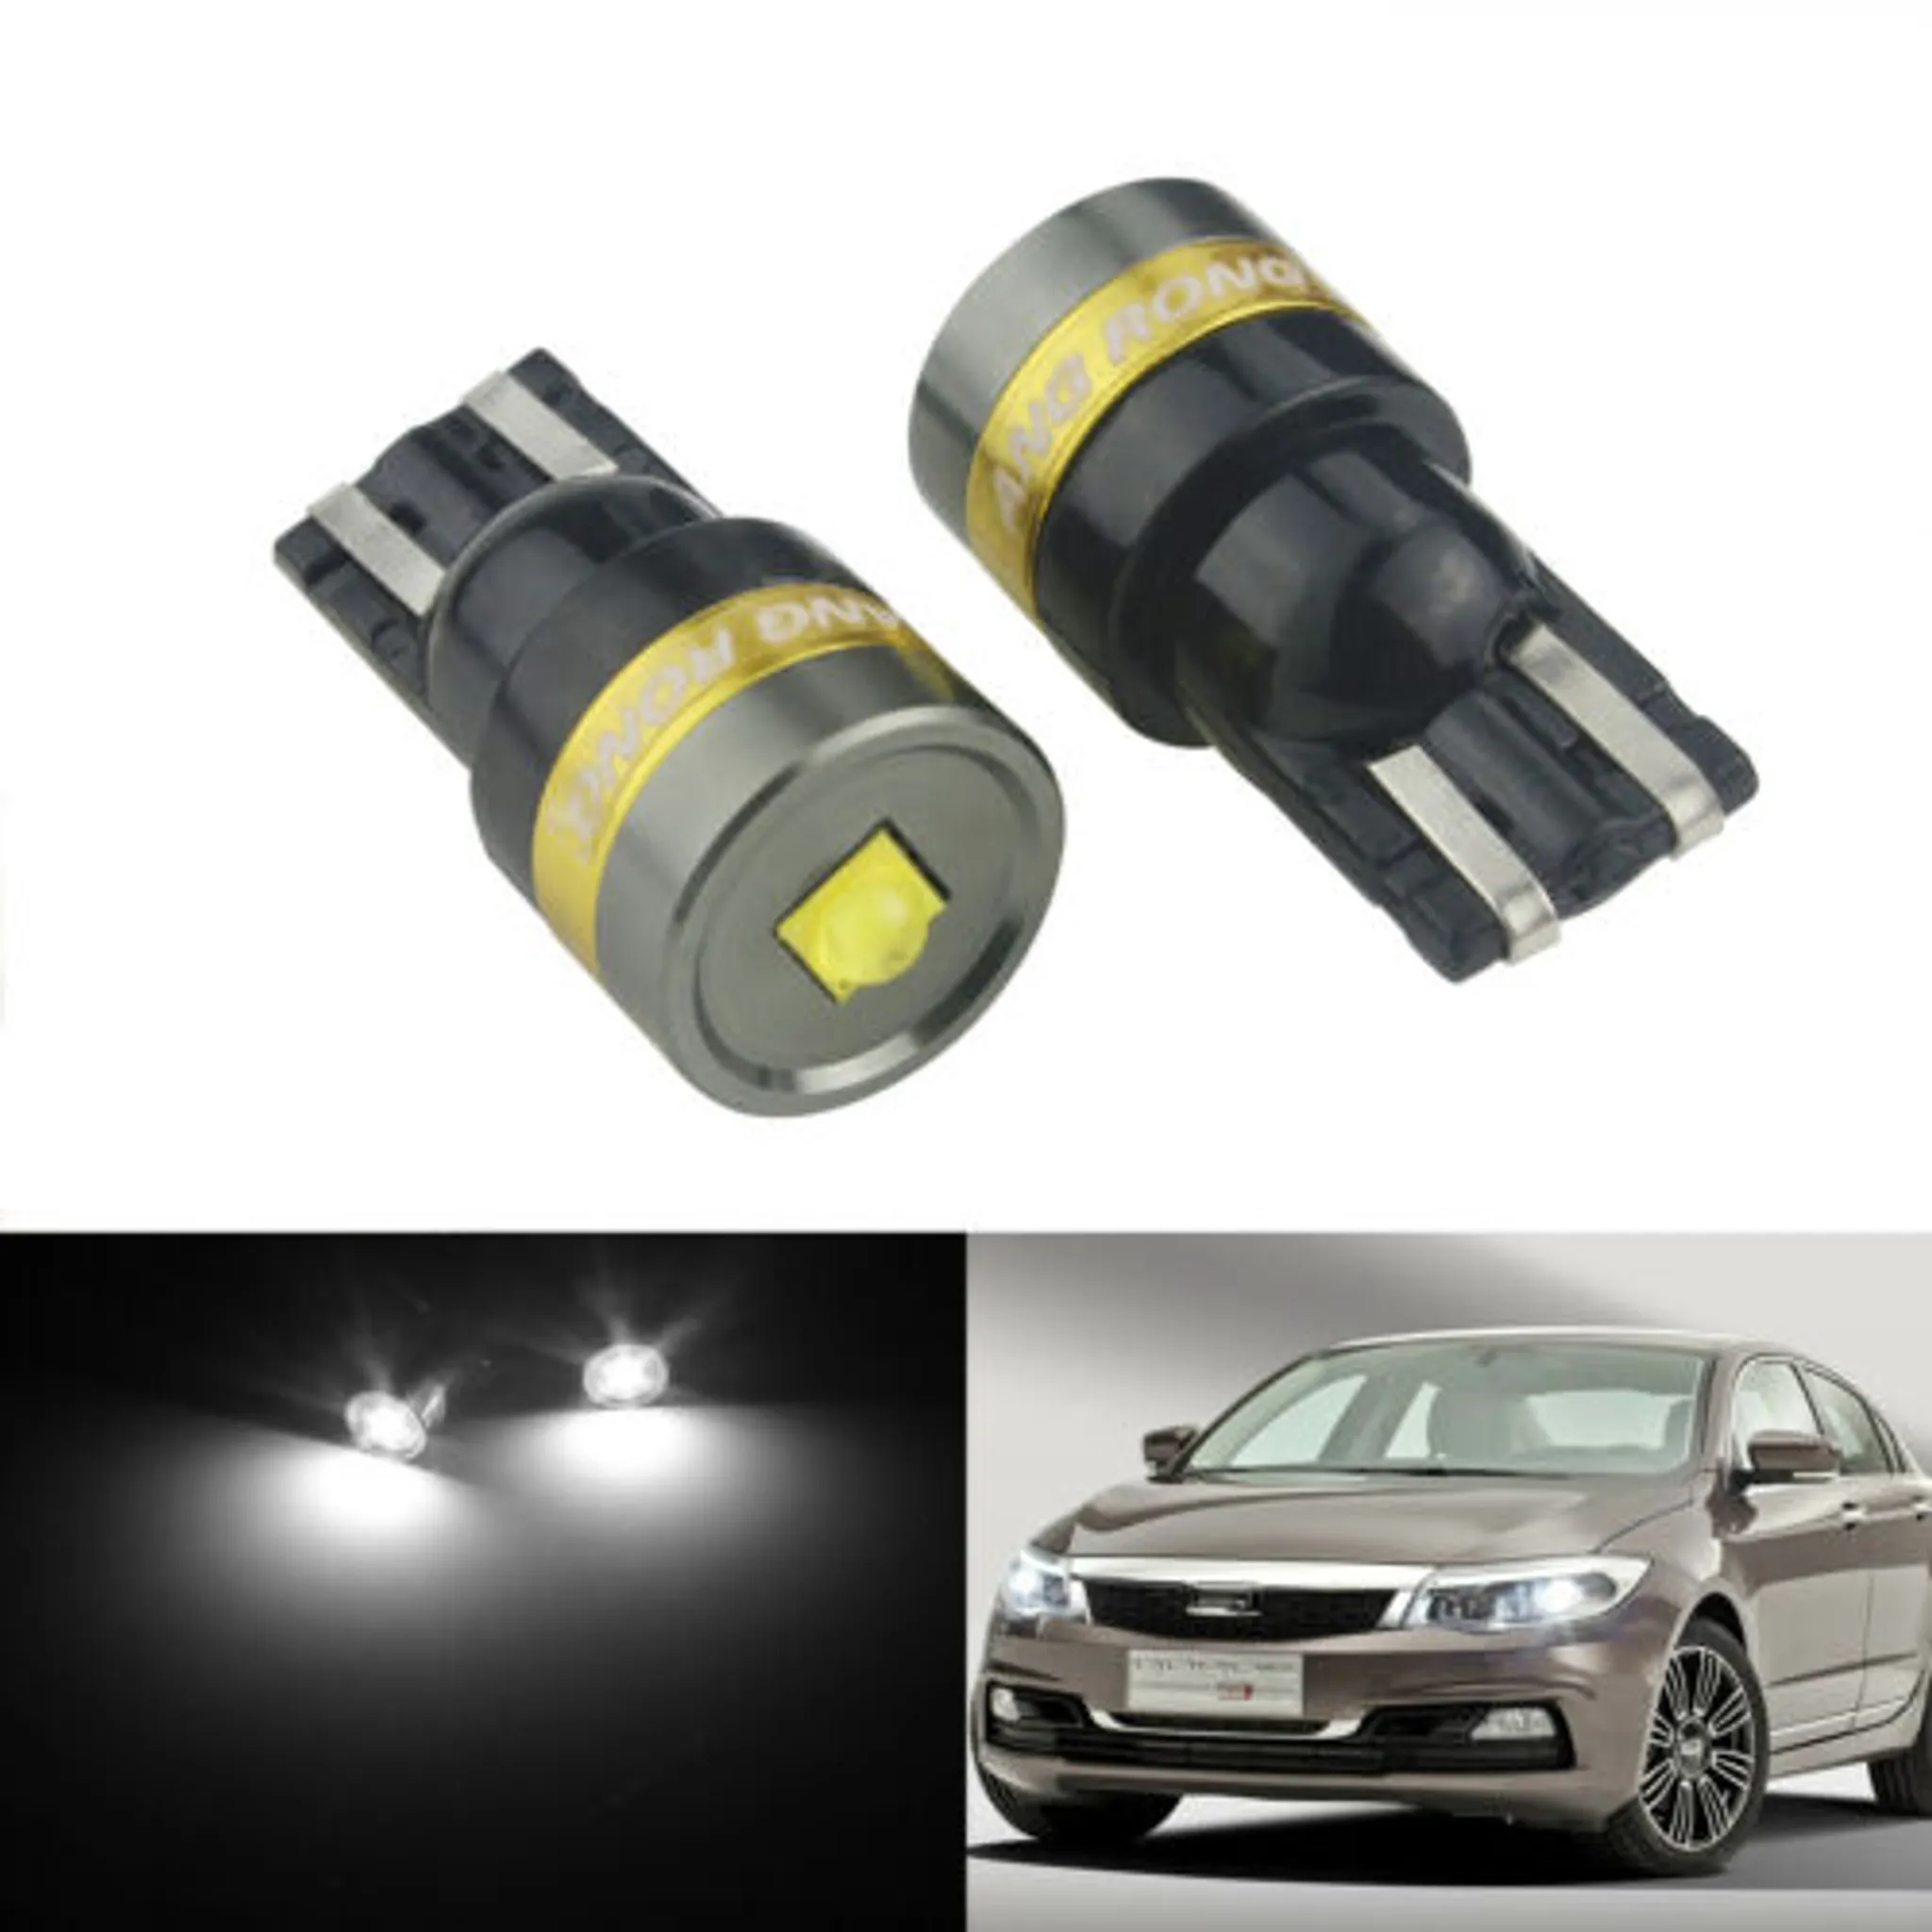 Autolampe Auto-Lampe externe Stromversorgung für Auto woyada 2 x LED-Fahrzeugleuchten mit Windbetrieb Auto-Tagfahrlicht keine Notwendigkeit Tagfahrlicht mit Drehventilator 